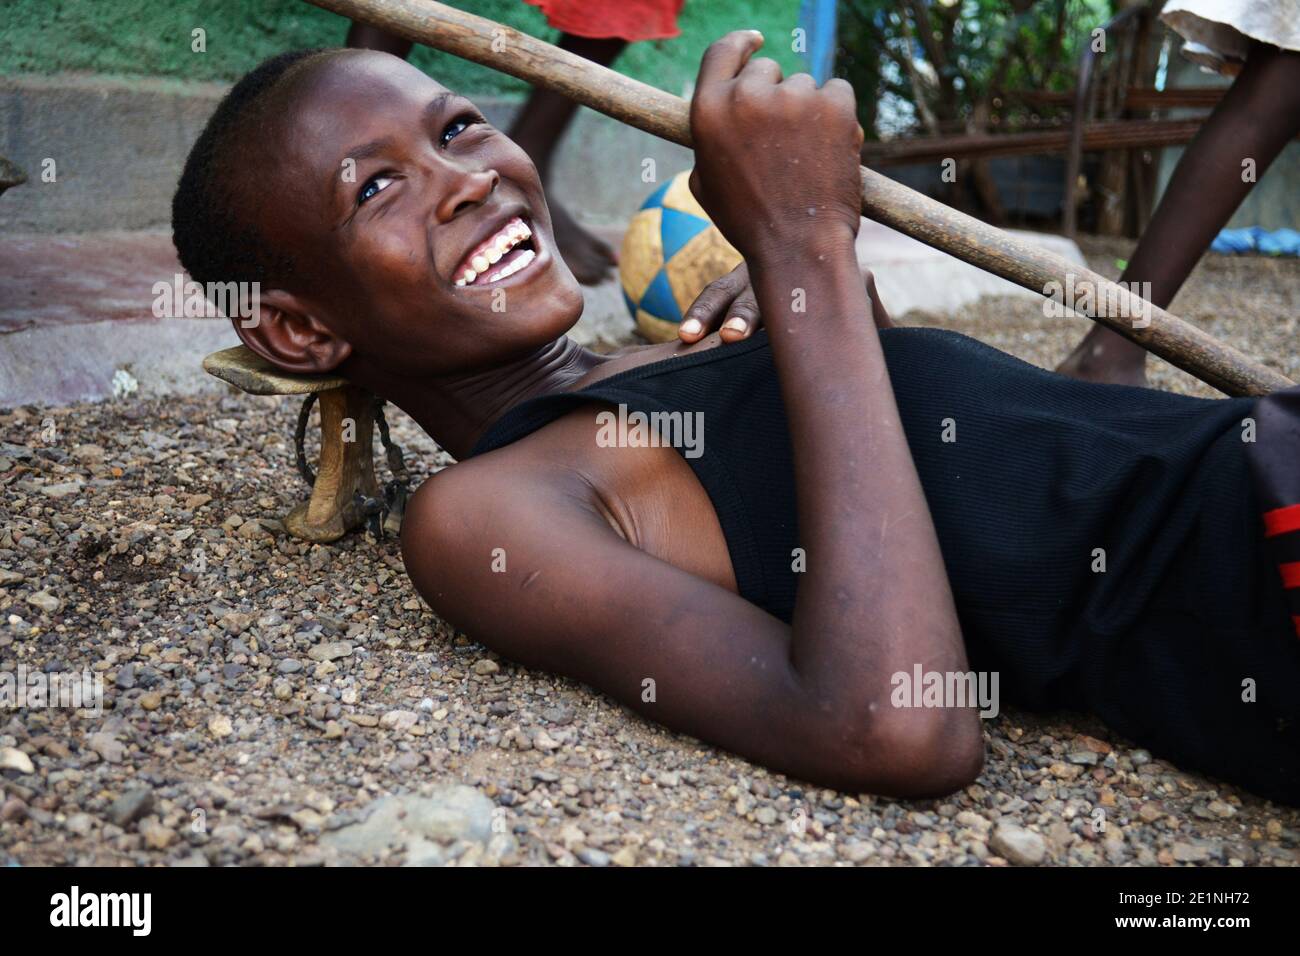 Porträt eines kenianischen Jungen aus dem Stamm der Turkana, der mit einem Stock und einem Kopfstand posiert, der von lokalen Pastoralisten verwendet wird. Aufgenommen in Kakuma in Kenia. Stockfoto